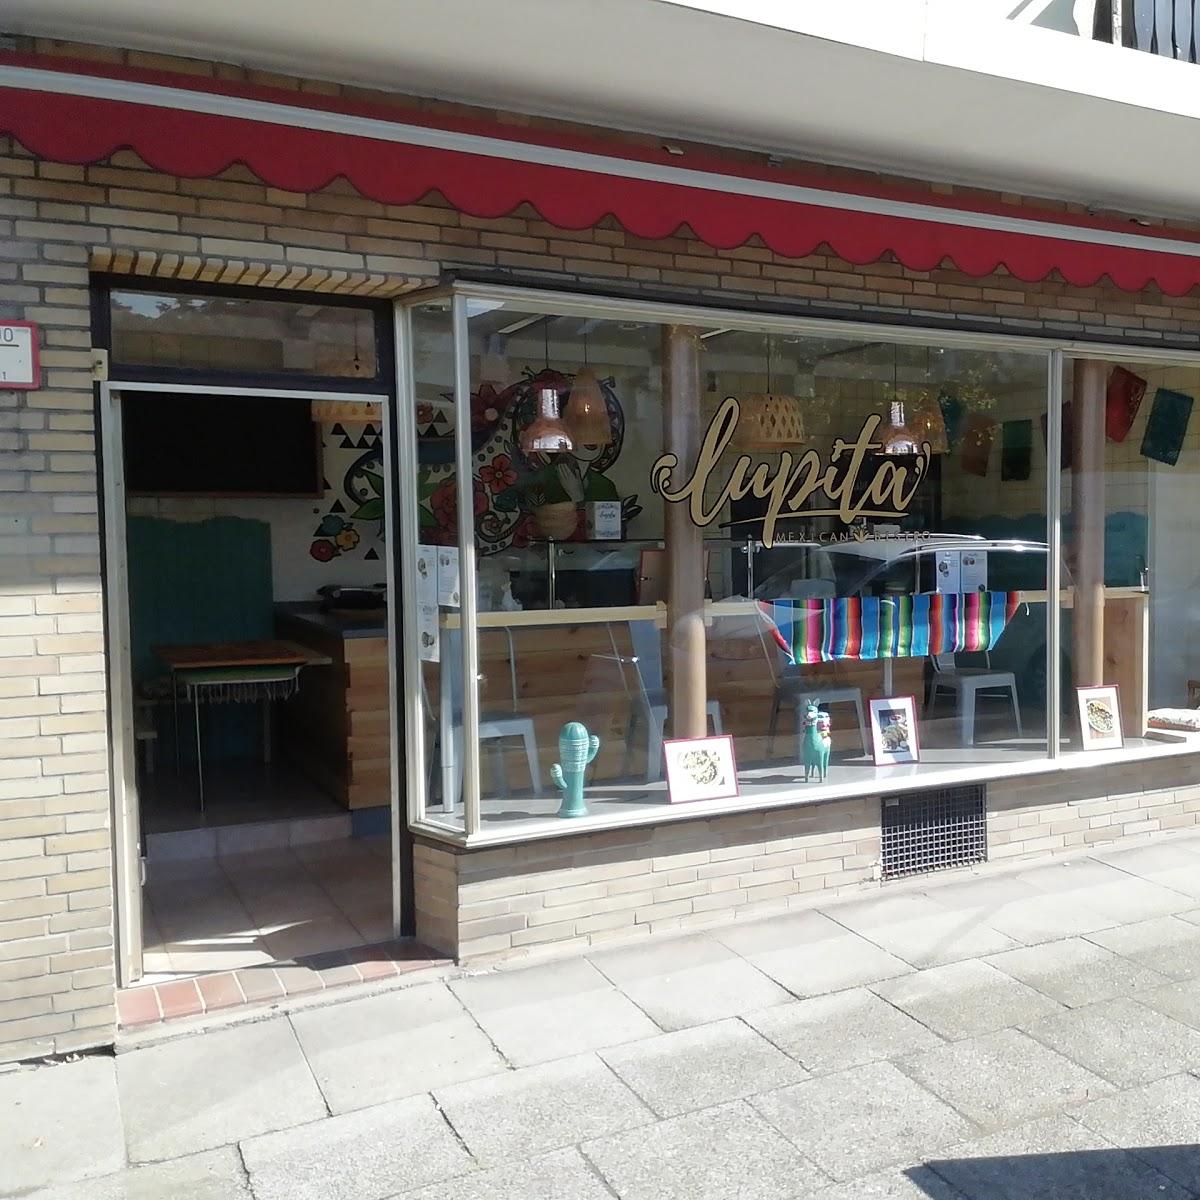 Restaurant "Lupita Mexican Bistro" in Bremen